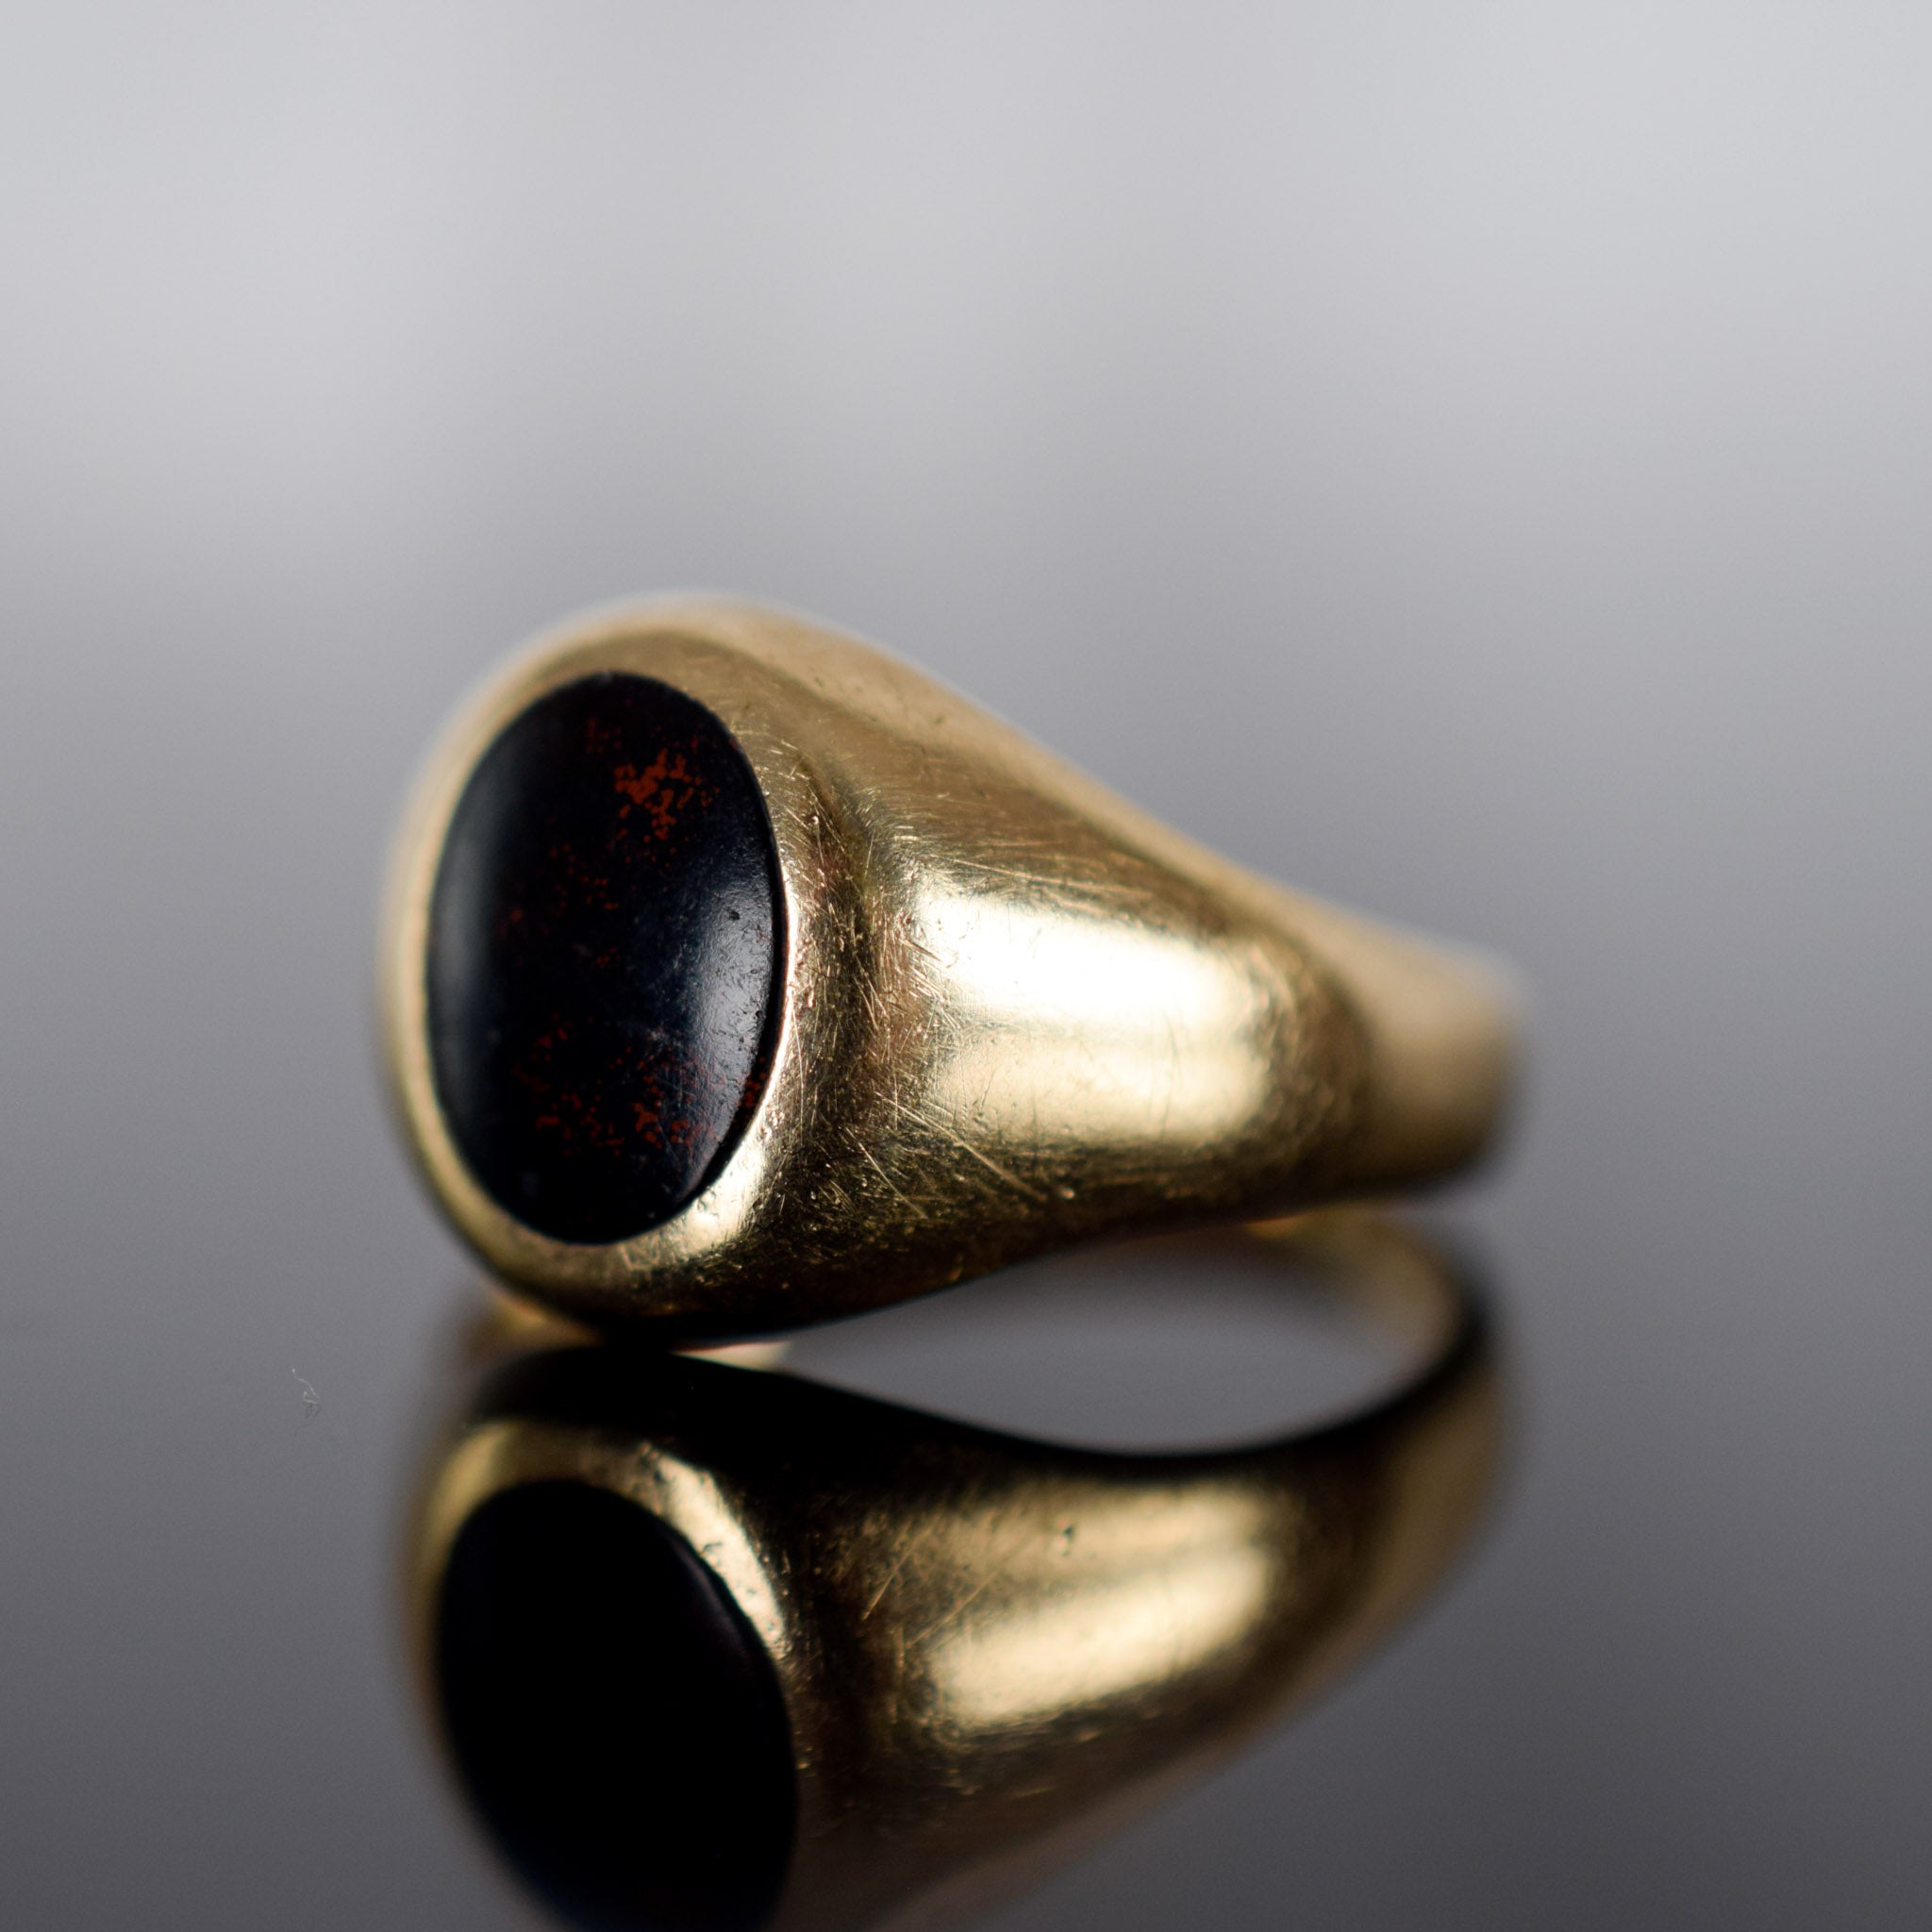 Vintage bloodstone ring for sale, folklor